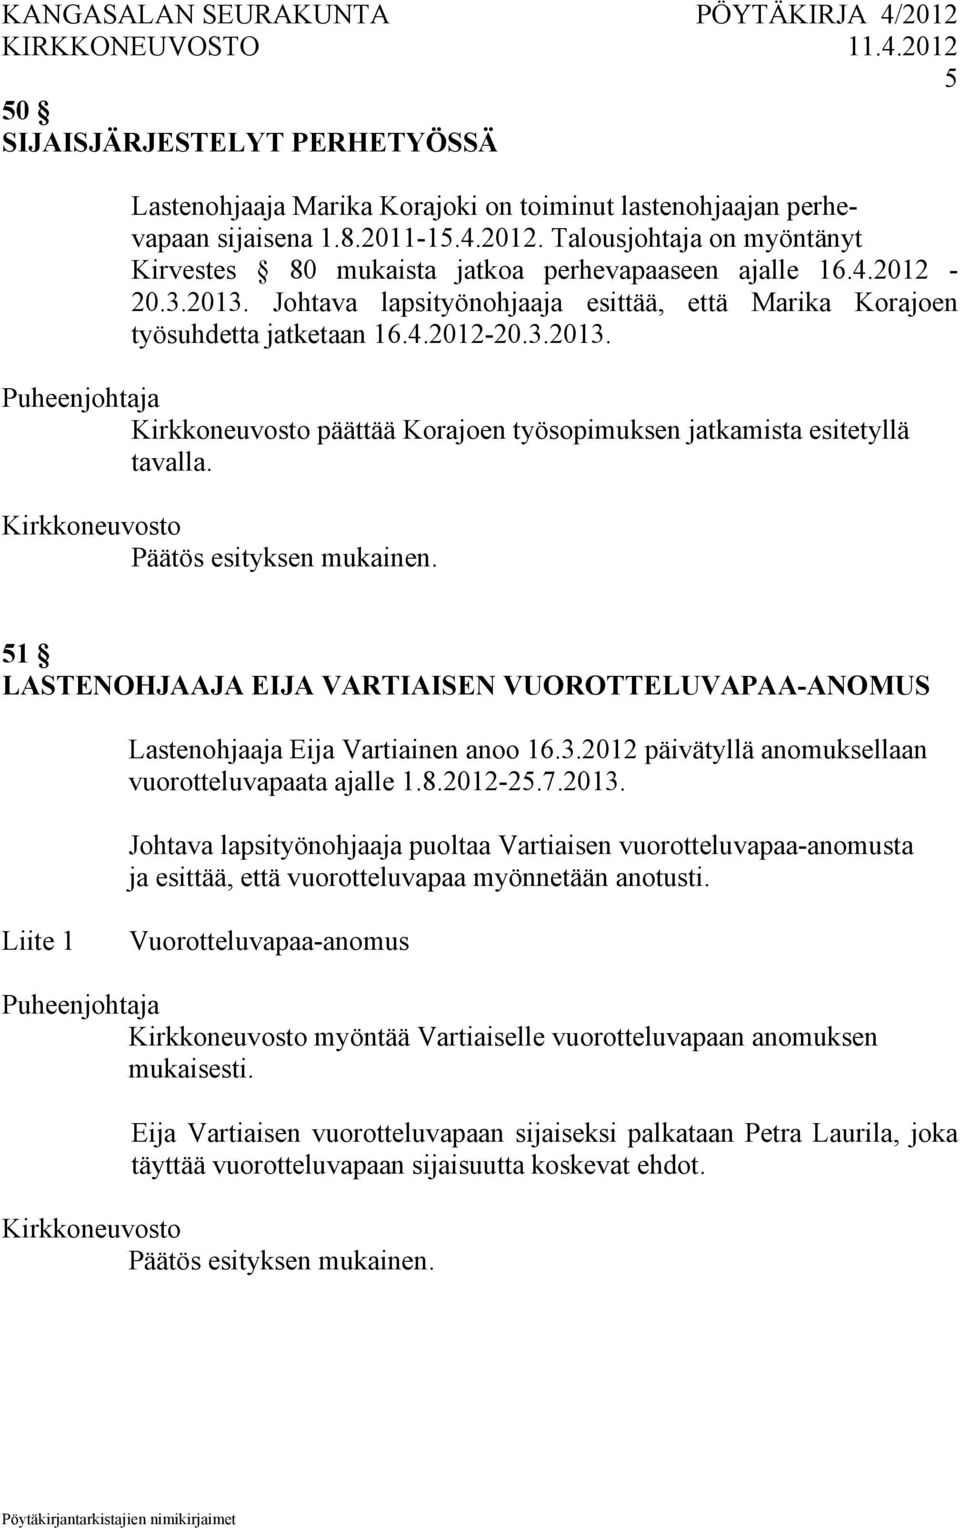 51 LASTENOHJAAJA EIJA VARTIAISEN VUOROTTELUVAPAA-ANOMUS Lastenohjaaja Eija Vartiainen anoo 16.3.2012 päivätyllä anomuksellaan vuorotteluvapaata ajalle 1.8.2012-25.7.2013.